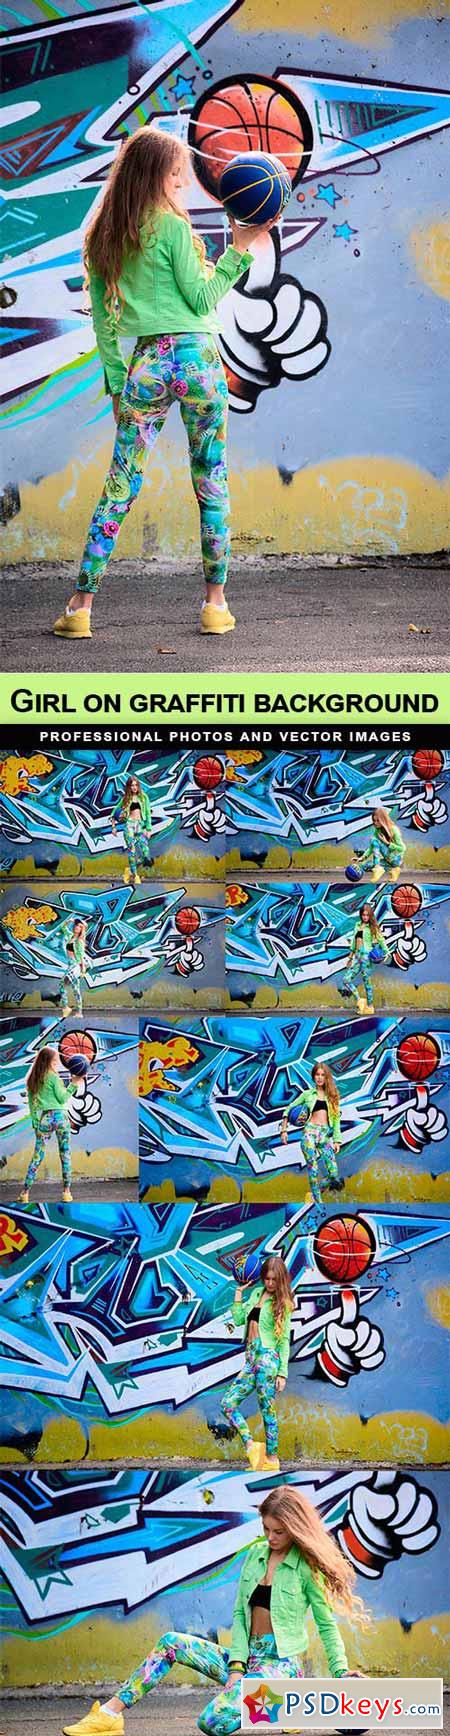 Girl on graffiti background - 8 UHQ JPEG